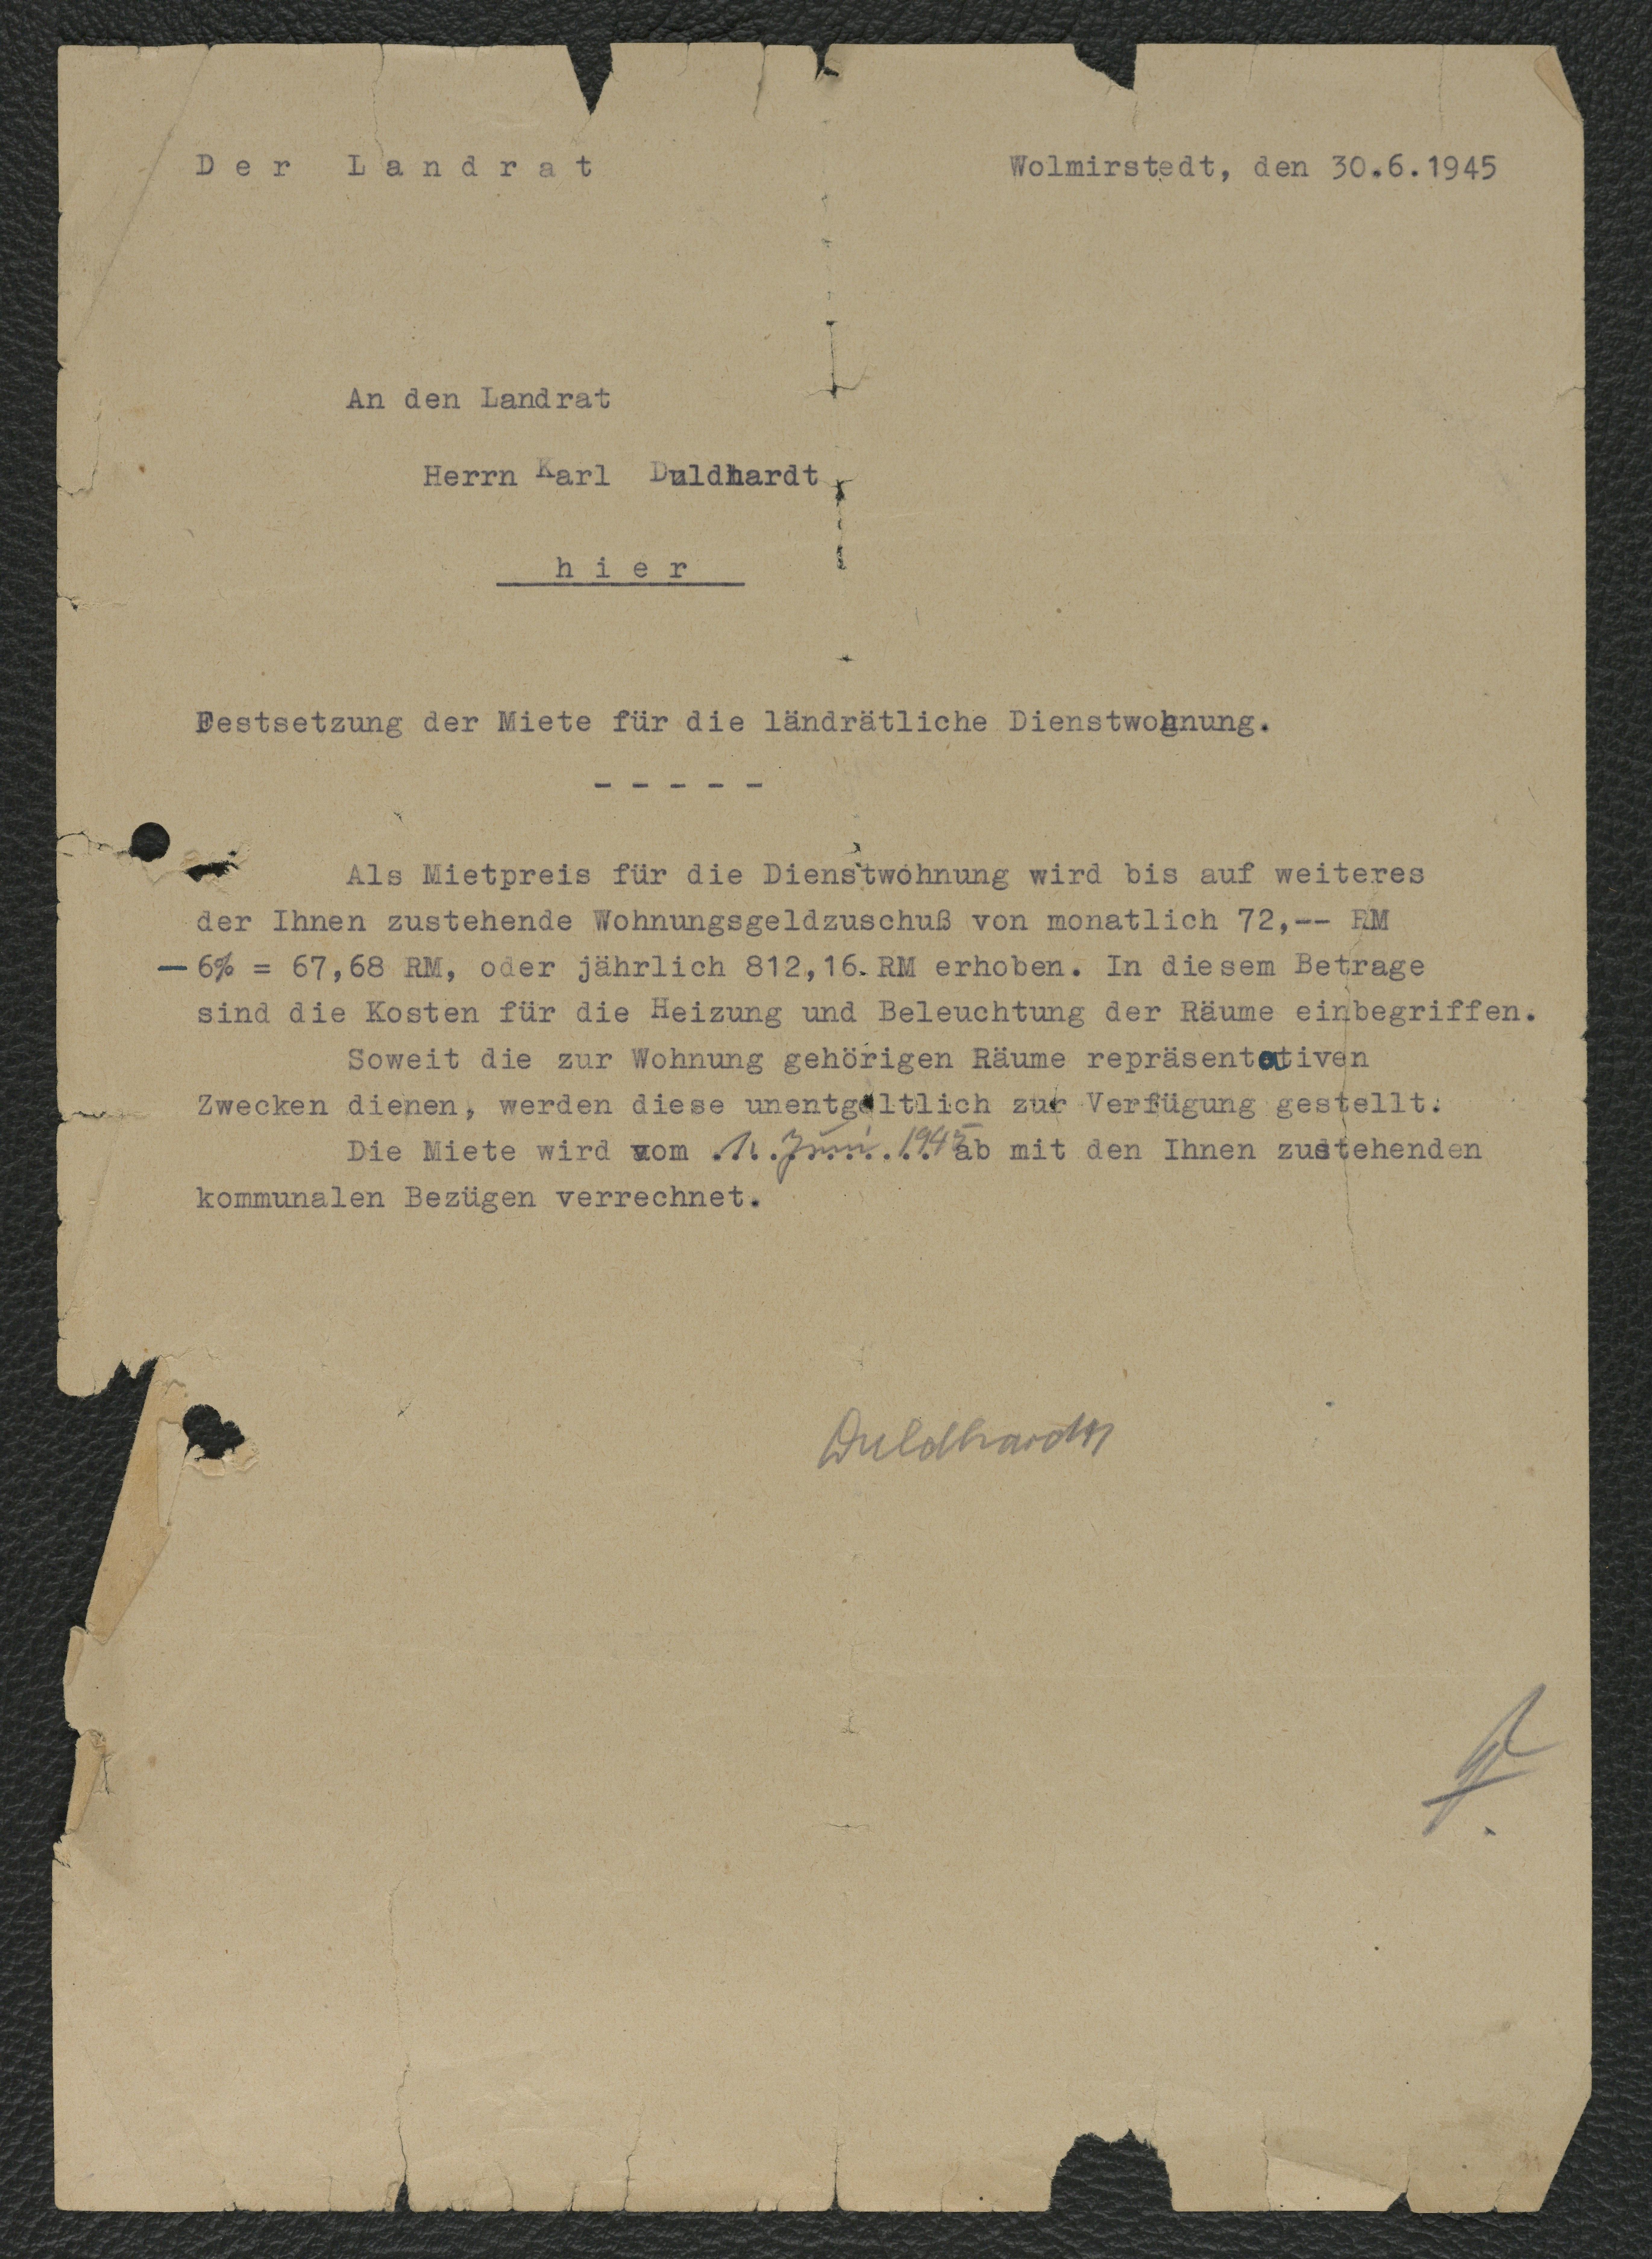 Mietbescheid zur Dienstwohnung von Karl Duldhardt, 30. Juni 1945 (Museum Wolmirstedt RR-F)